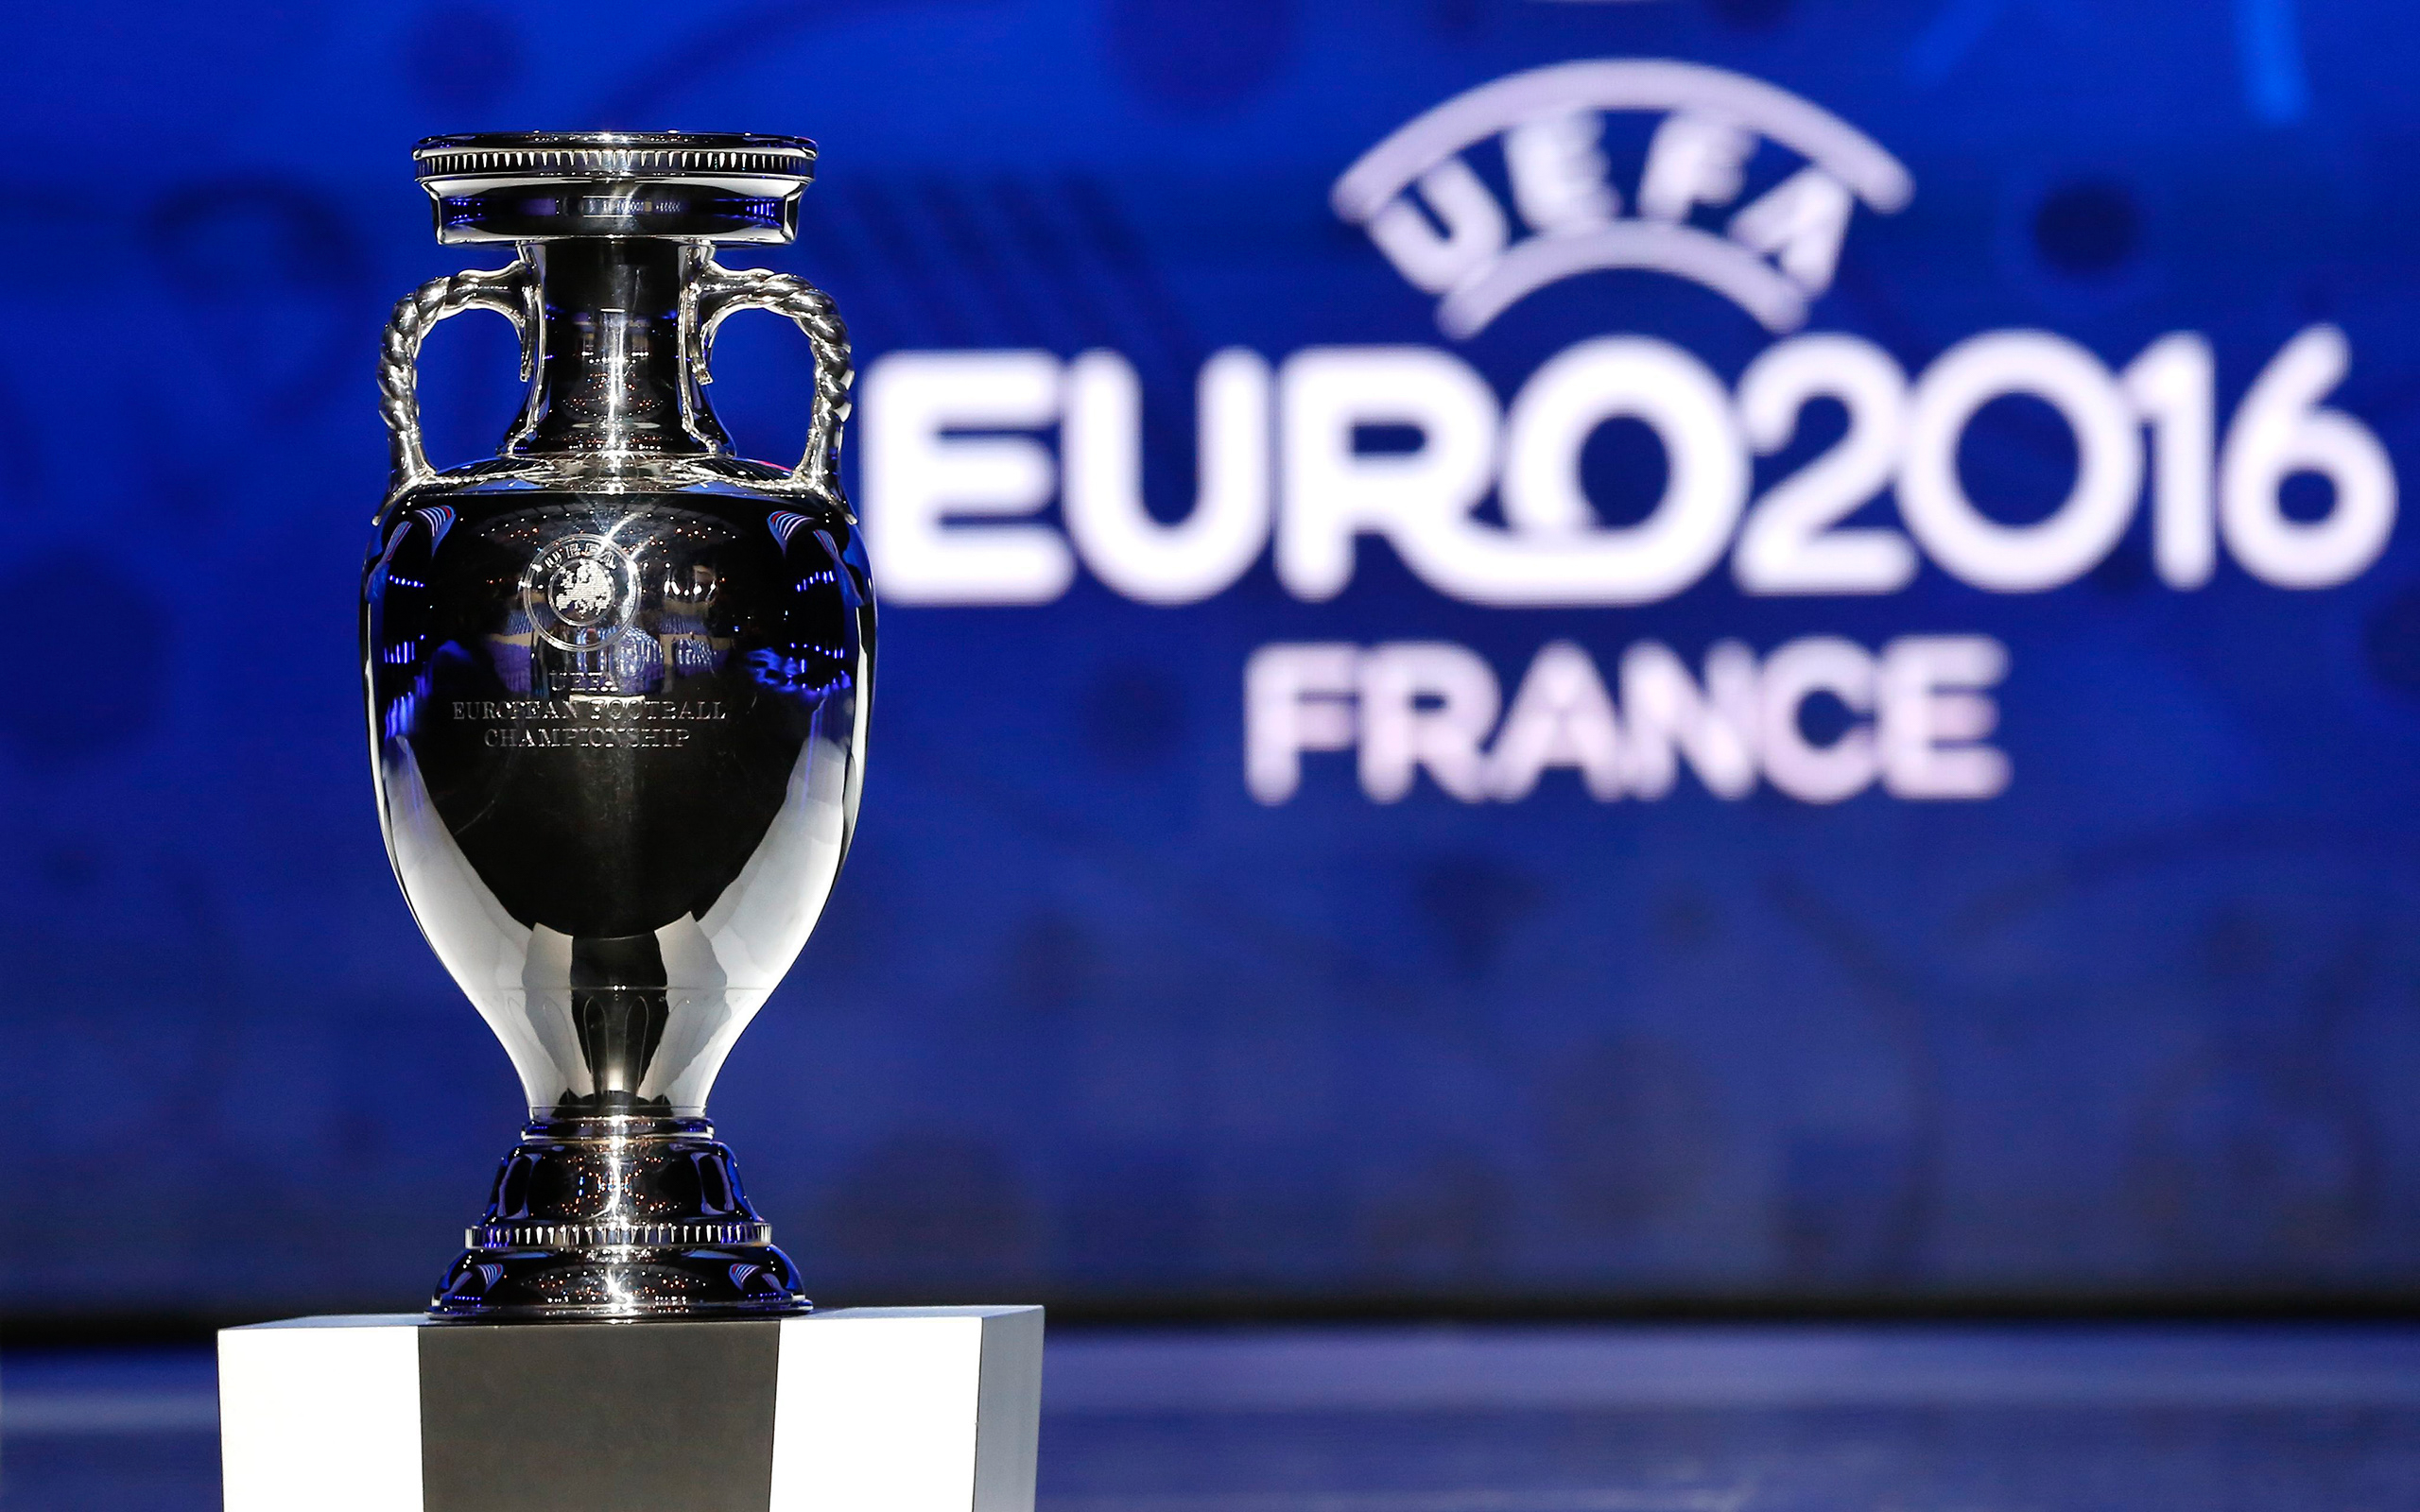 Власти Франции огорчили футбольных фанатов: на Евро-2016 запрещена уличная трансляция матчей